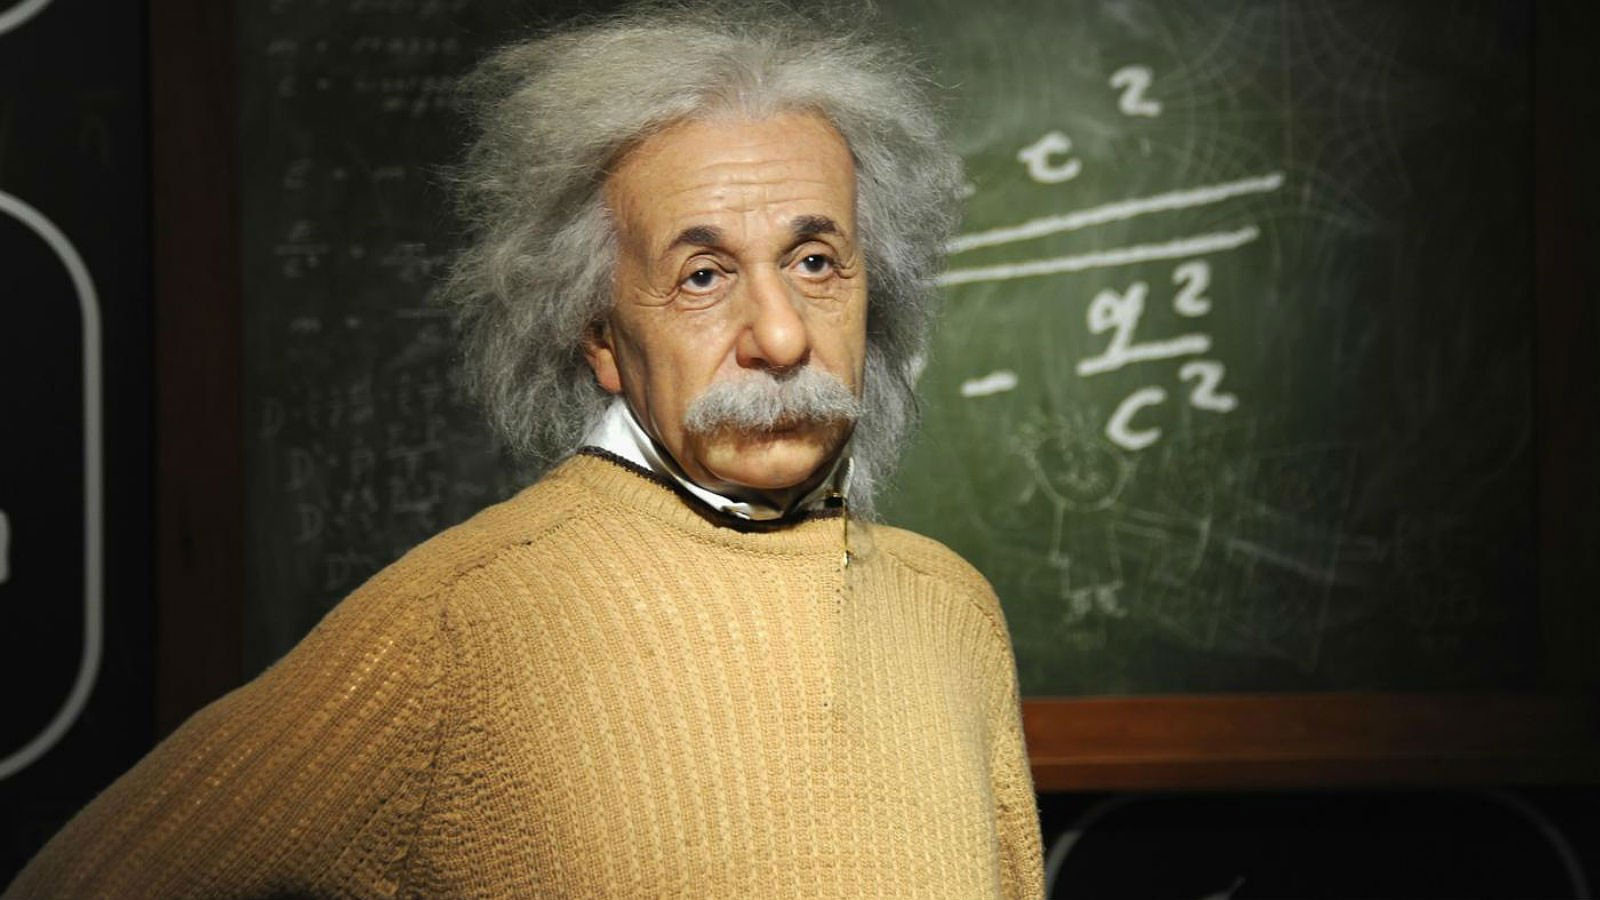 Albert Einstein tüm zamanların en zeki bilim insanları arasında gösterilir. Einstein, en çok görelilik teorisini geliştirmesiyle tanınır. IQ seviyesi 160'tır ve Kova burcudur.